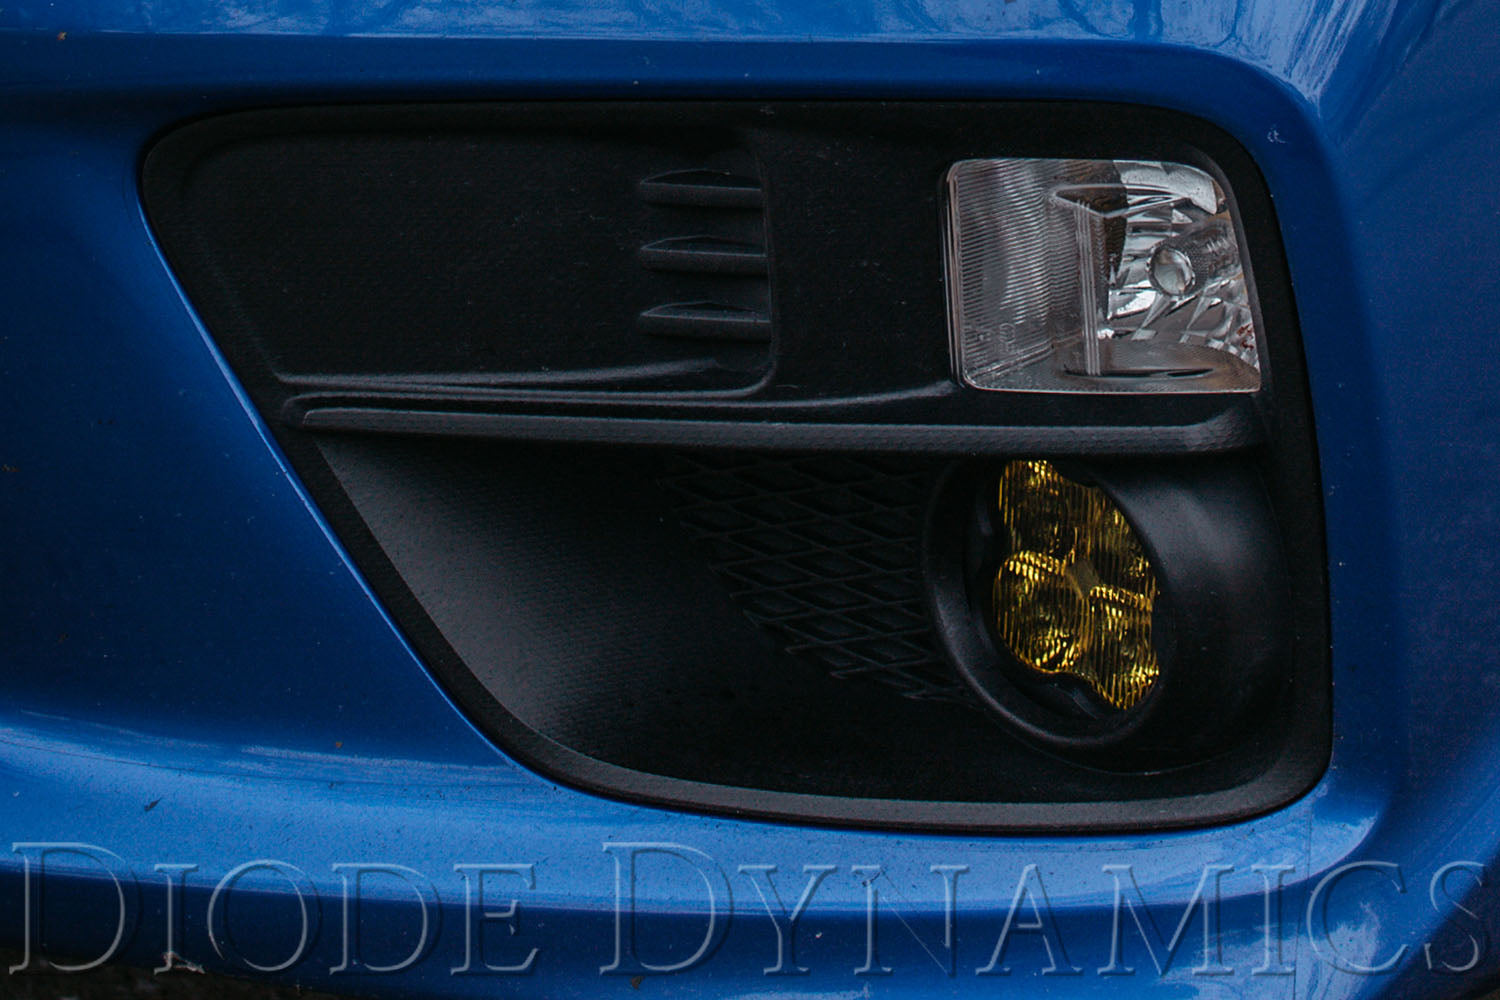 SS3 LED Fog Light Kit for 2007-2012 Nissan Sentra Yellow SAE Fog Sport Diode Dynamics